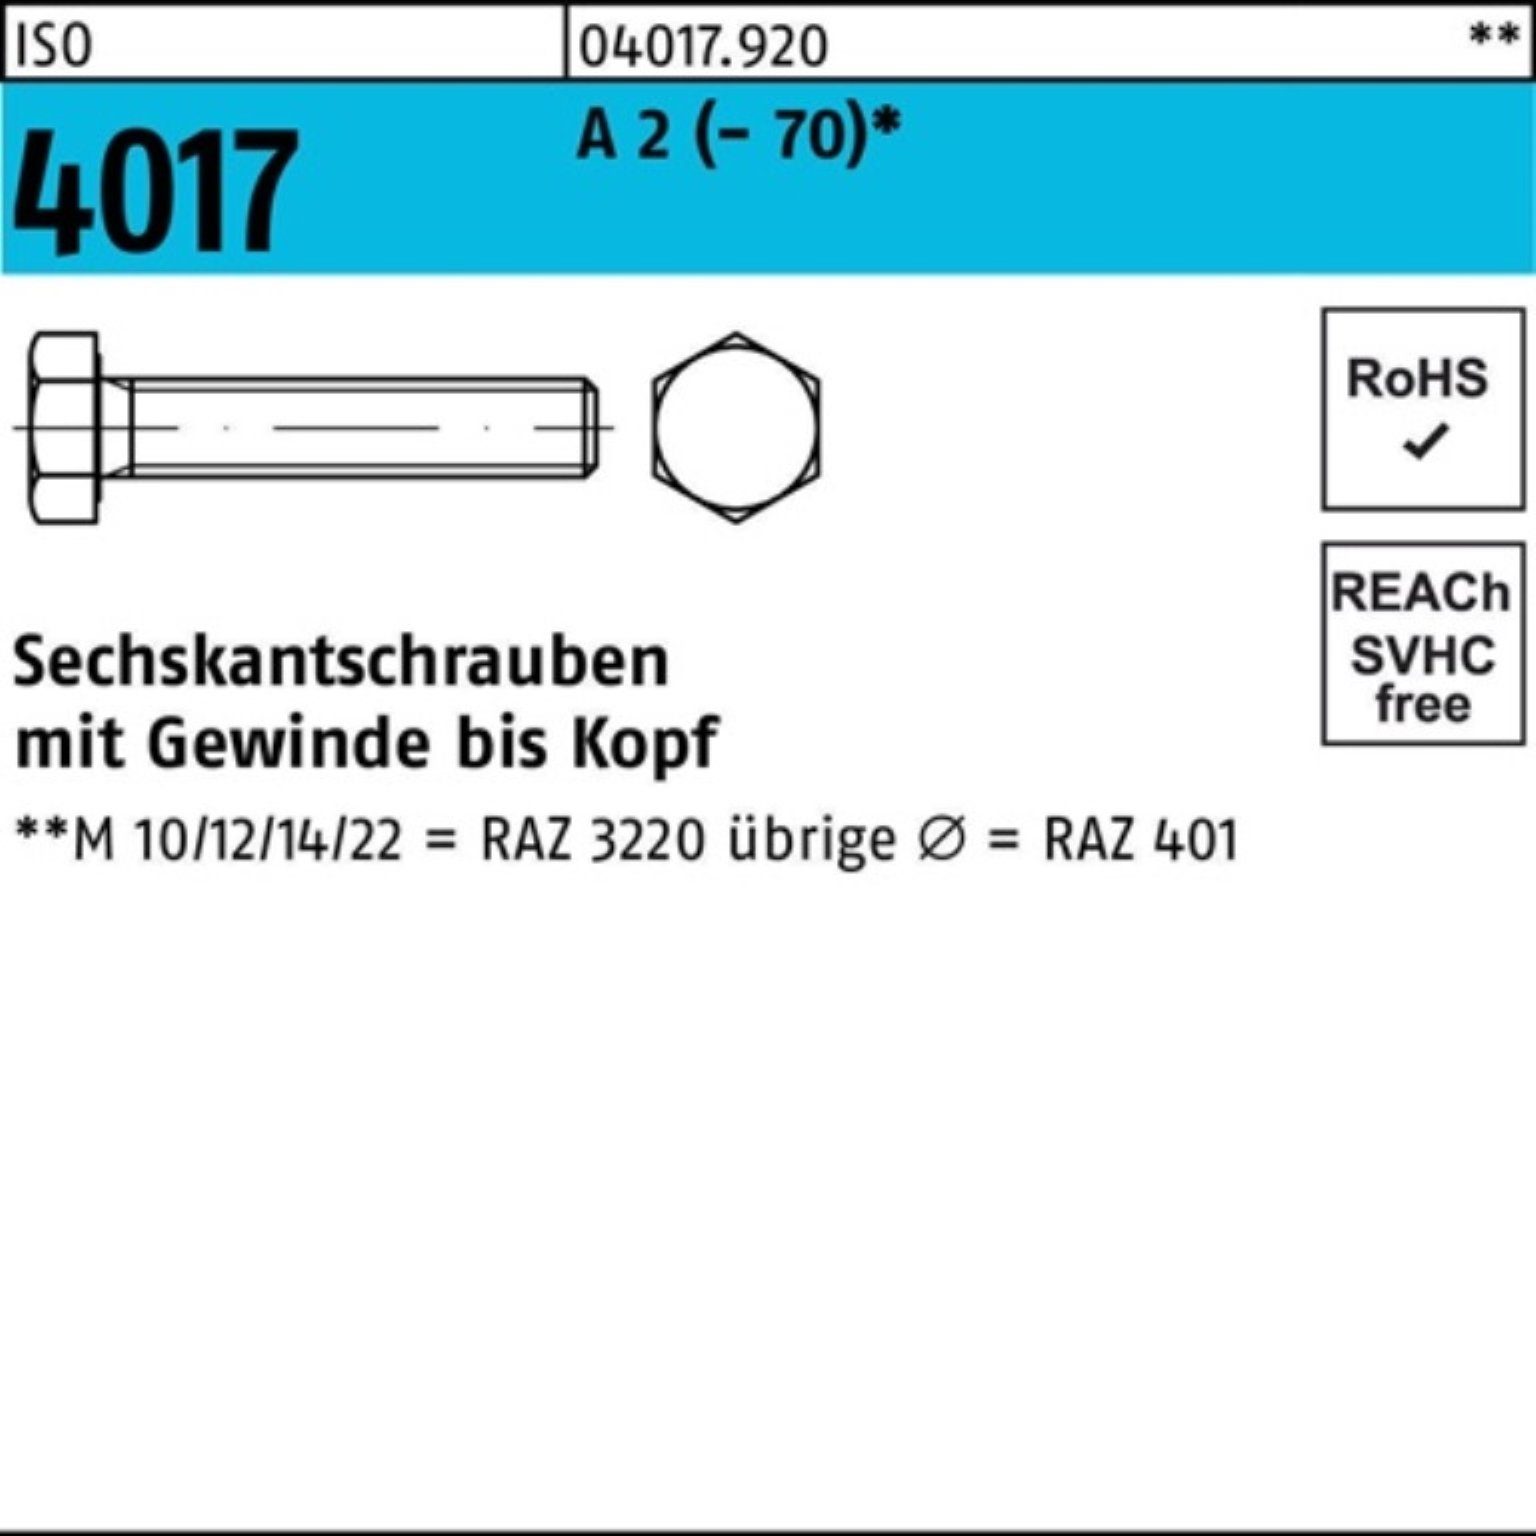 Bufab Sechskantschraube 100er Pack Sechskantschraube ISO 4017 VG M6x 20 A 2 (70) 100 Stück